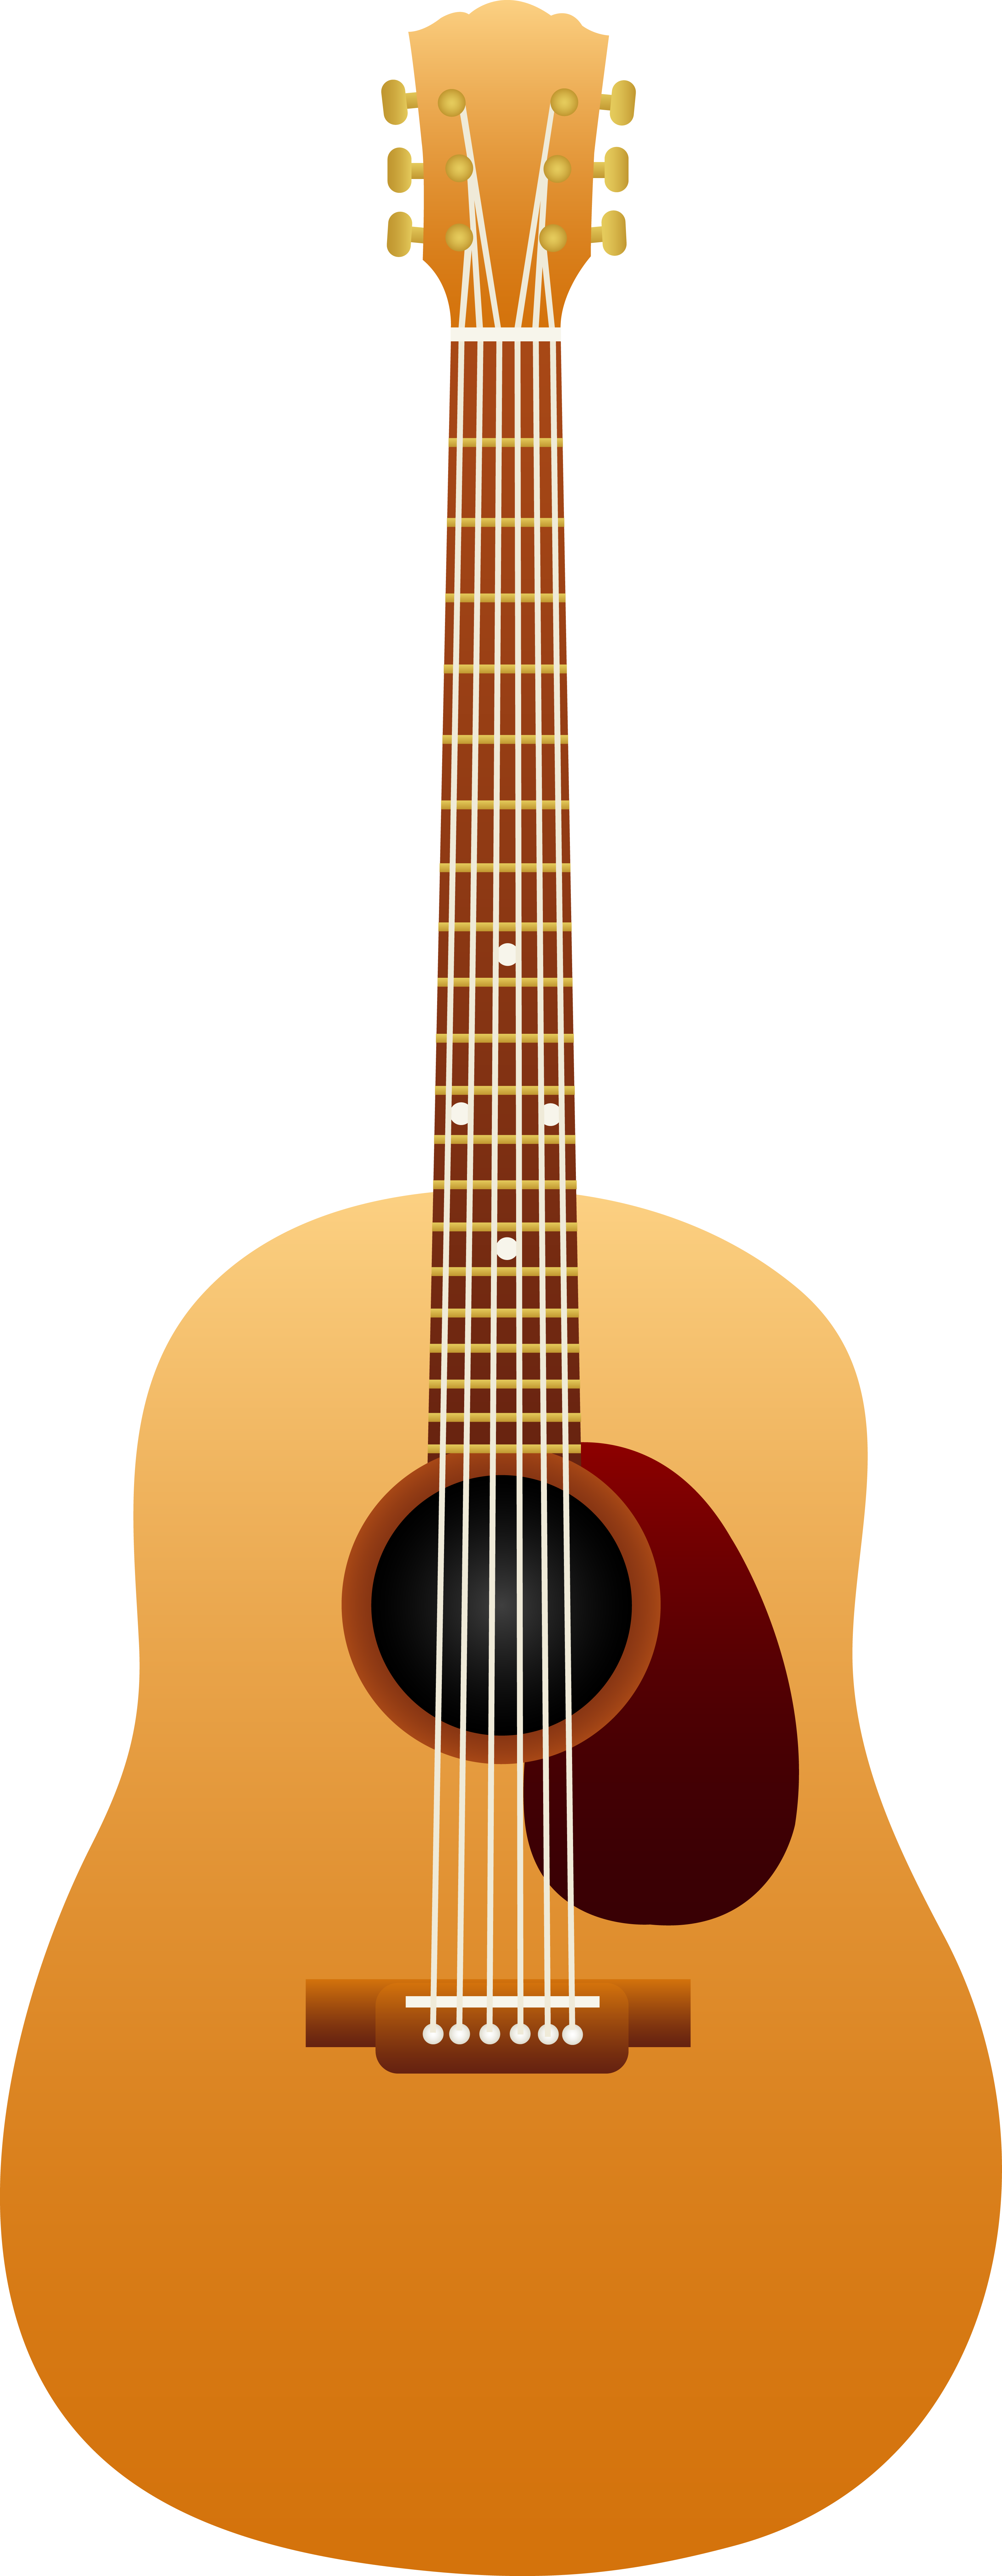 Sunburst Png Guitar Clipart Acoustic.